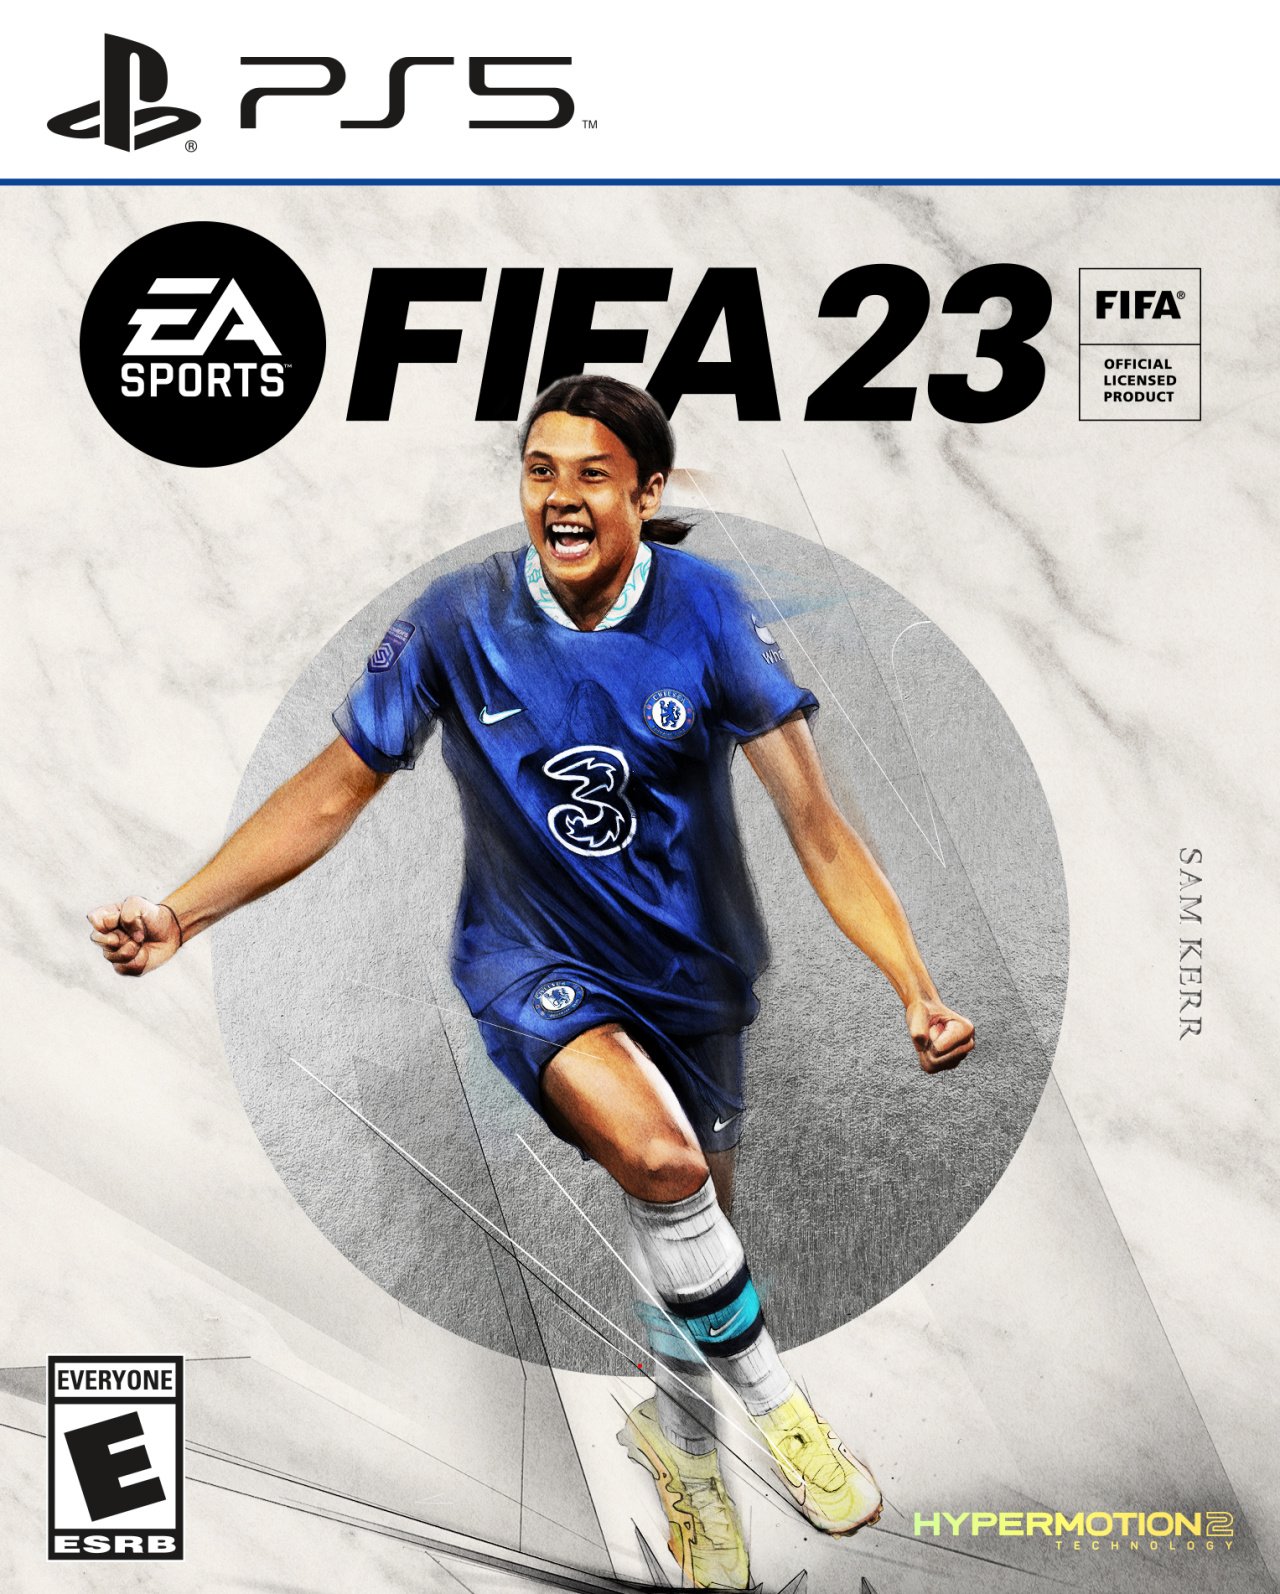 FIFA 23 PlayStation 5 Edition - AA GAMING STORE